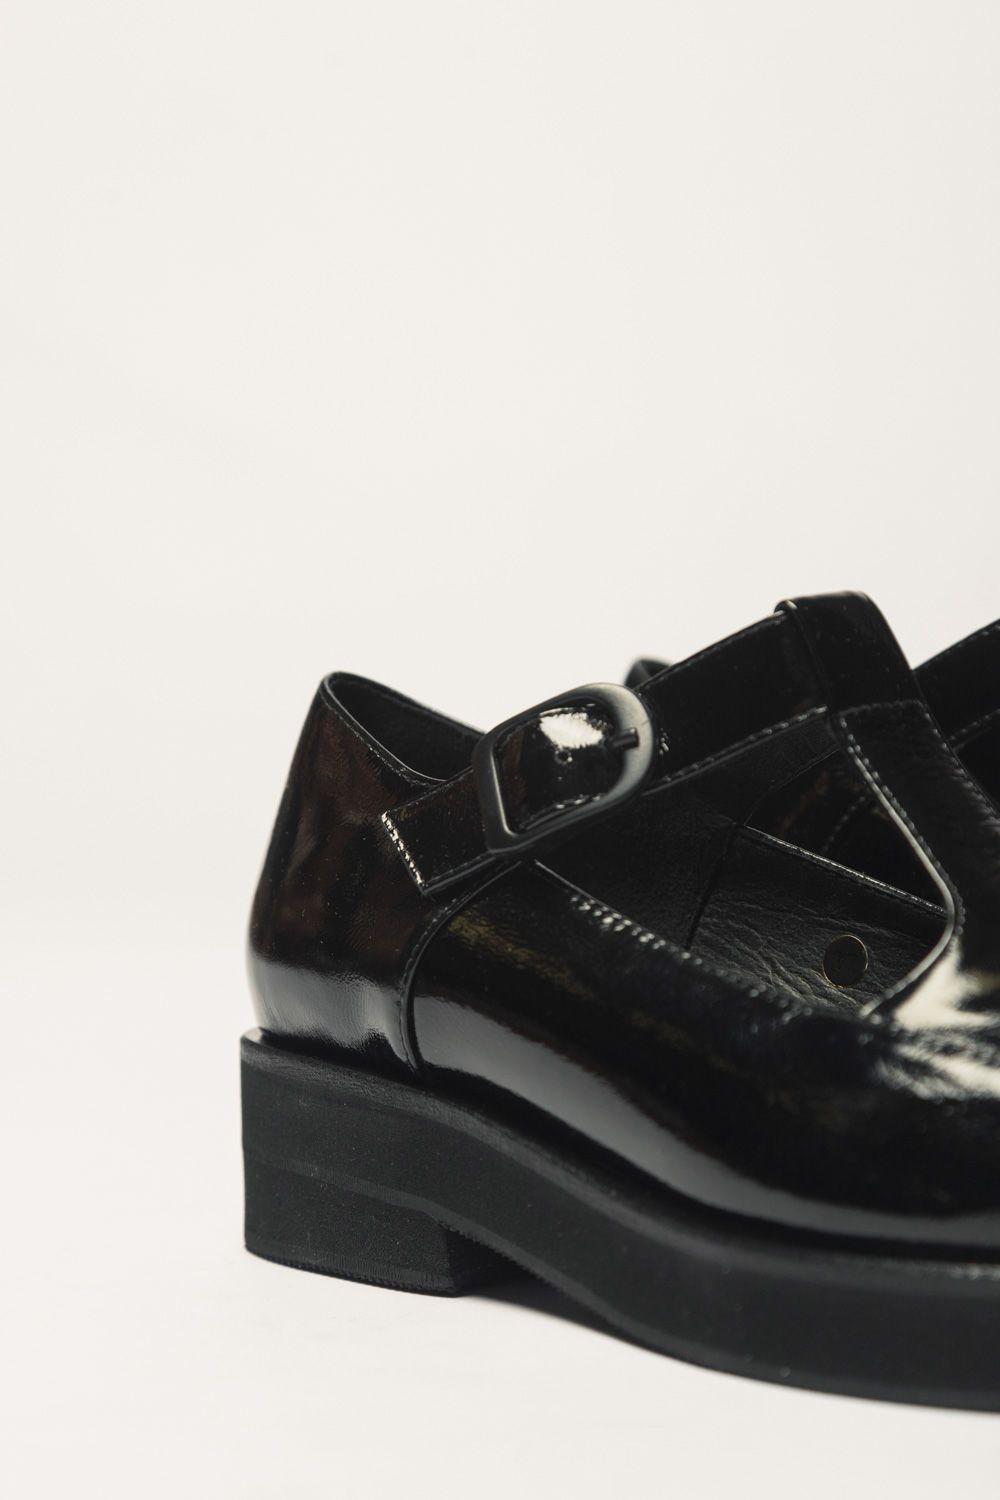 Zapato Guillermina Negro 35